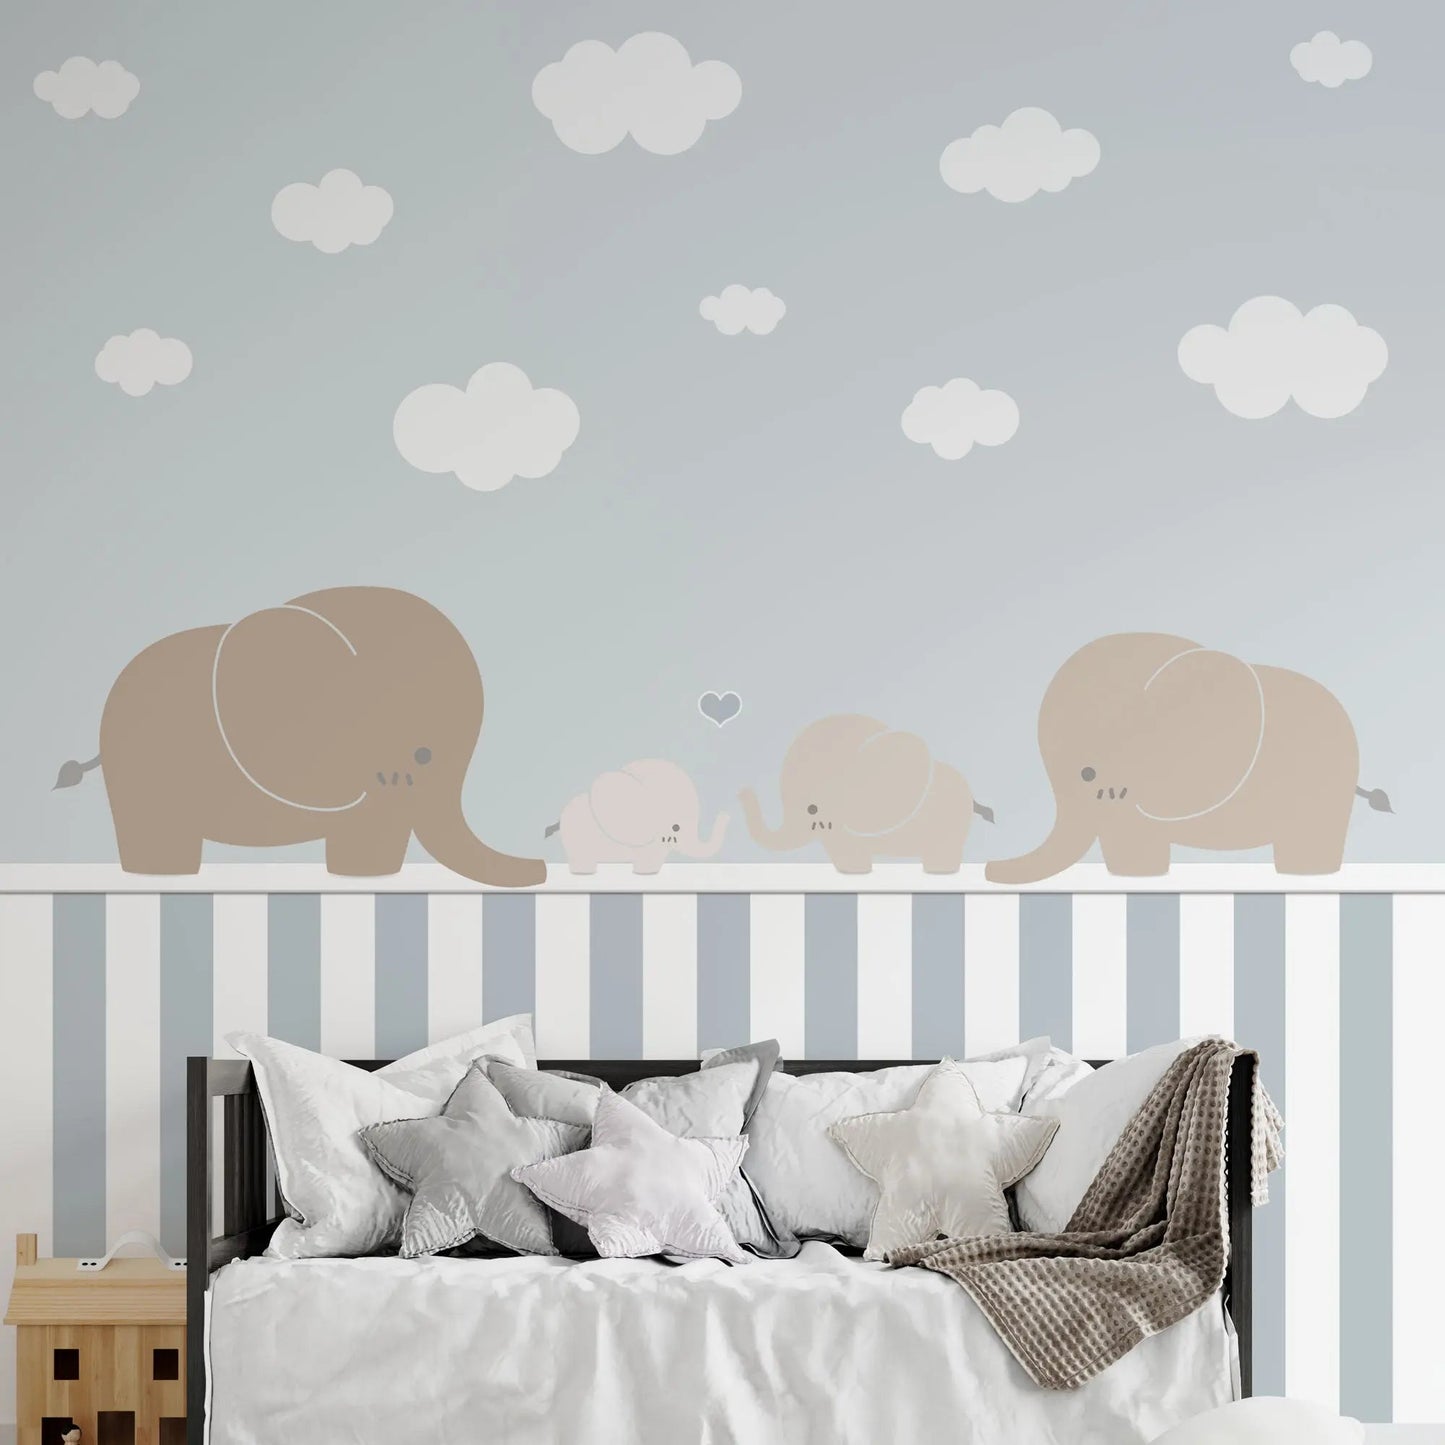 Tapete für Kinderzimmer oder Babyzimmer mit Elefanten auf einem gestreiftem Sockel.